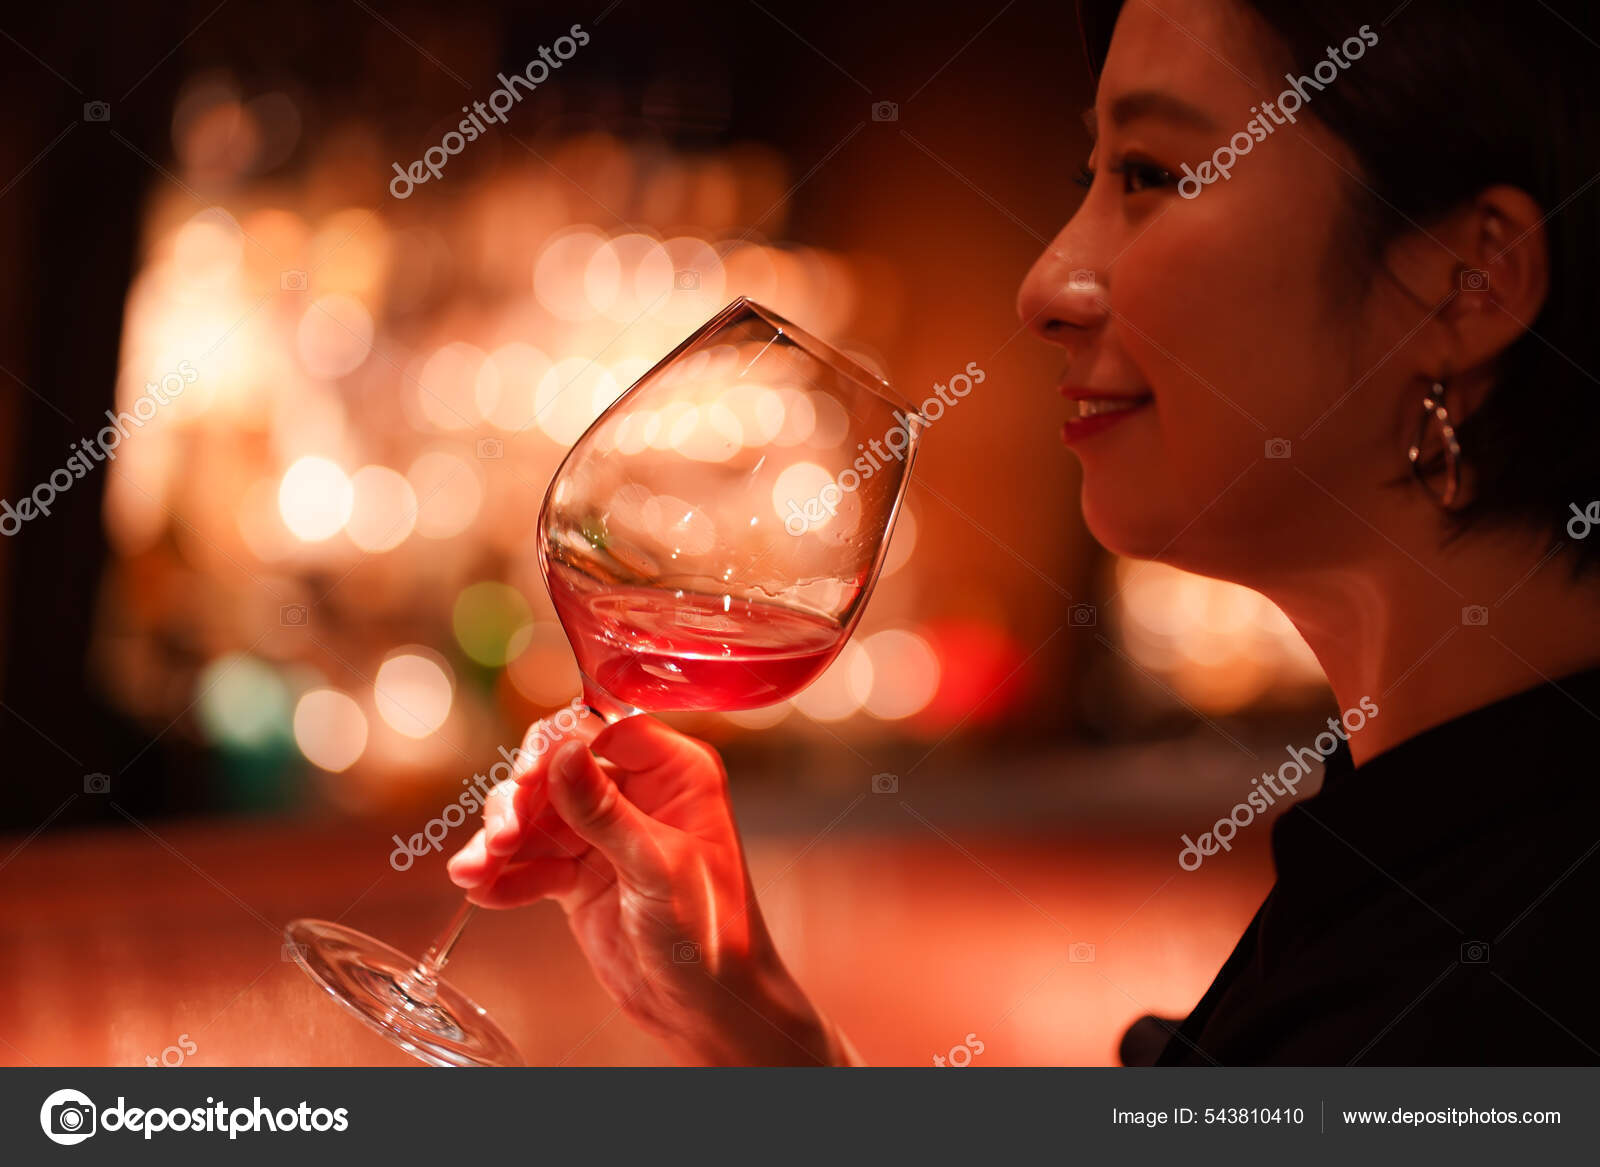 Hermosa Chica Bebiendo Bar Cerca: fotografía de stock © yamasan #543810410  | Depositphotos